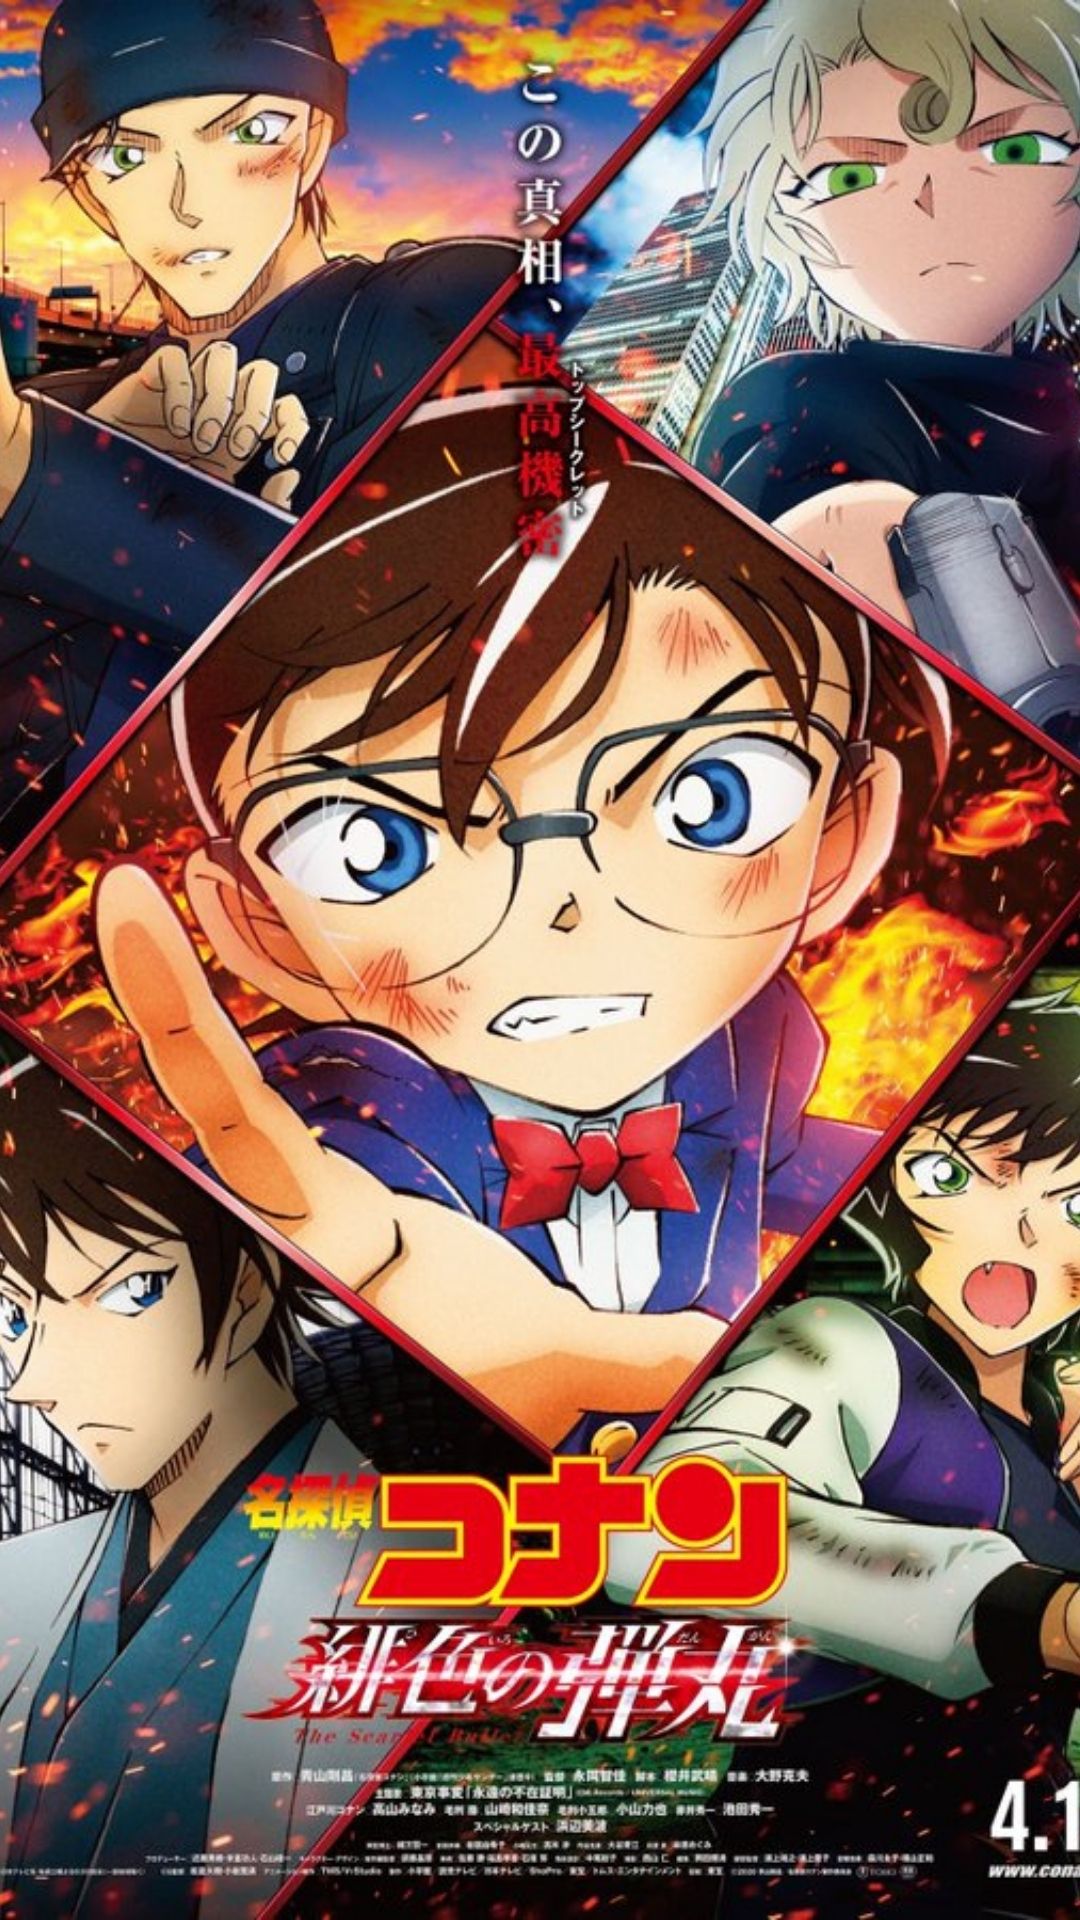 Detective Conan 25th Anime Film 2022 Release Date, Plot